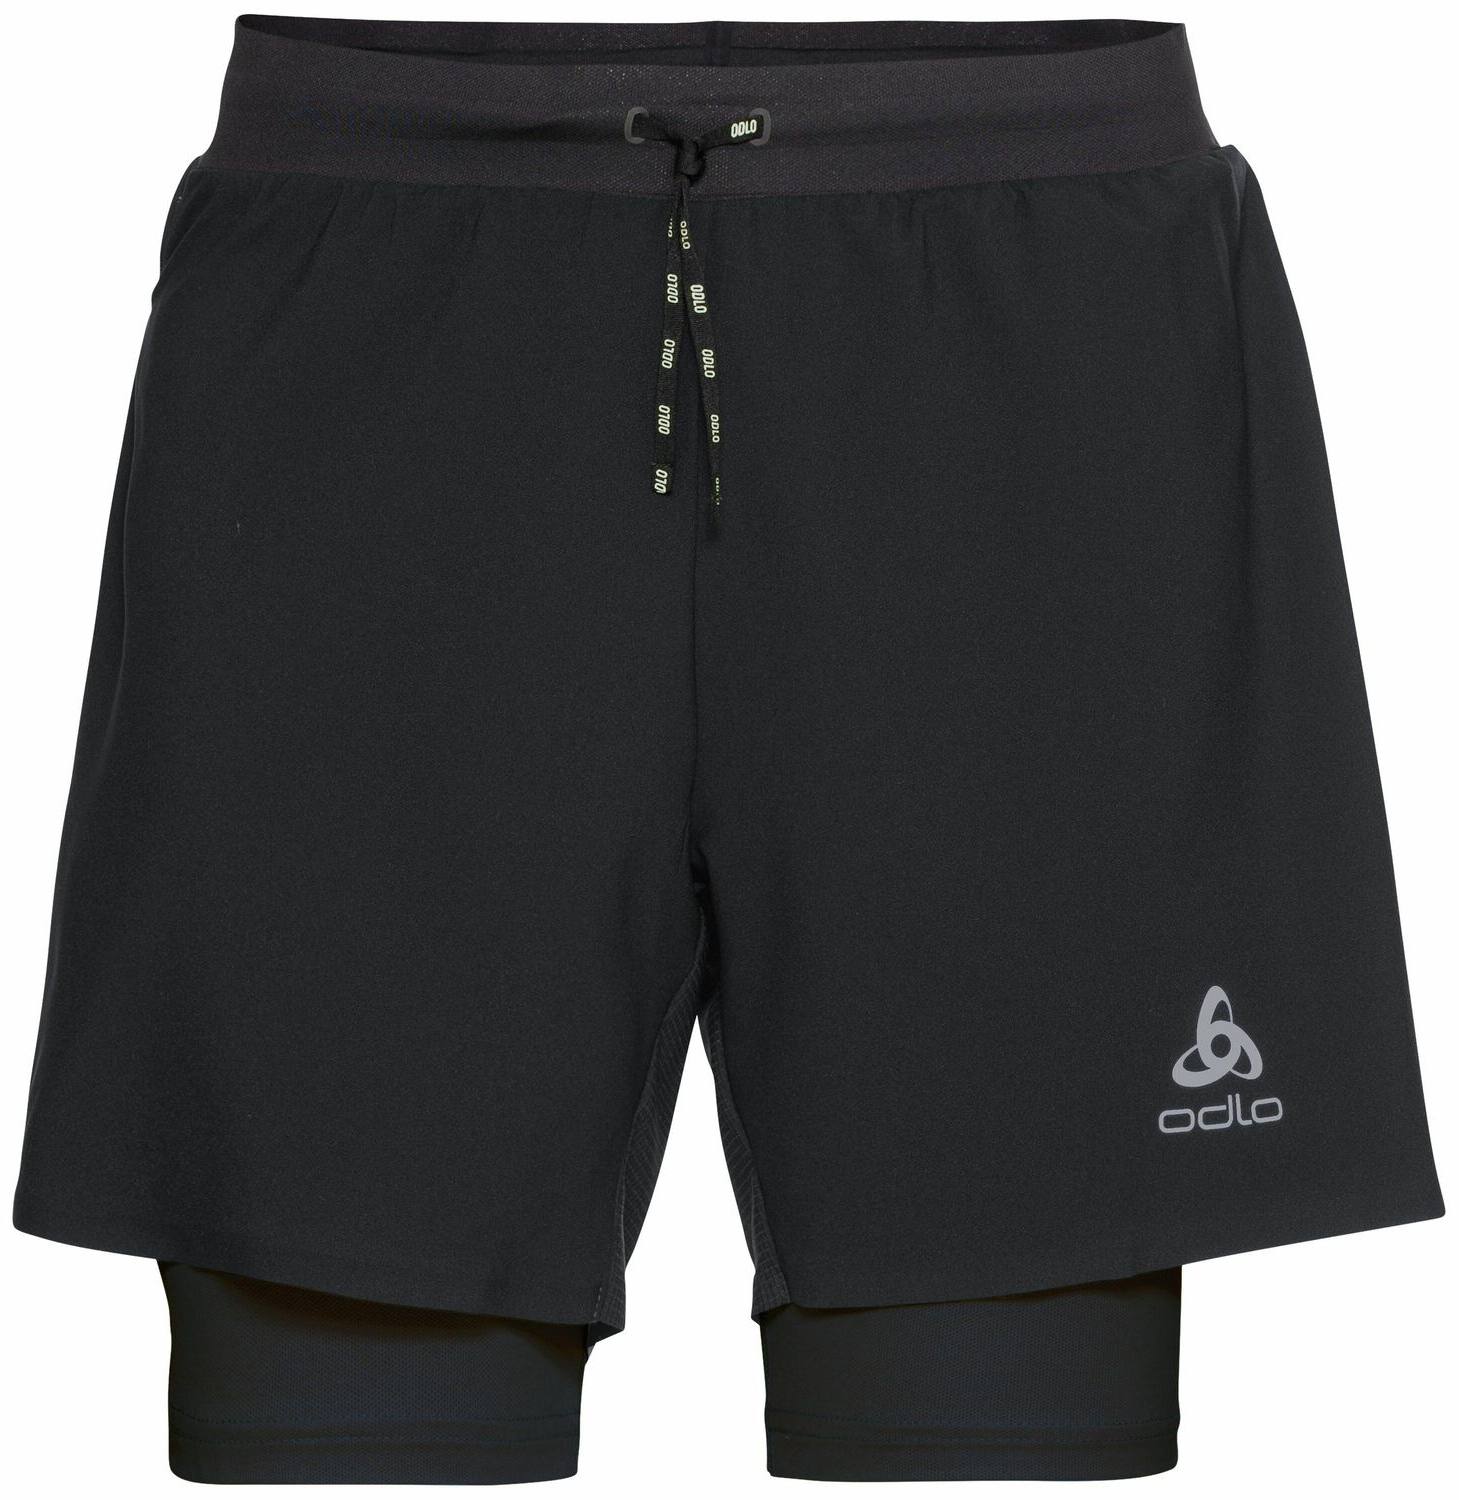 Odlo Axalp Trail 2in1 Shorts 6